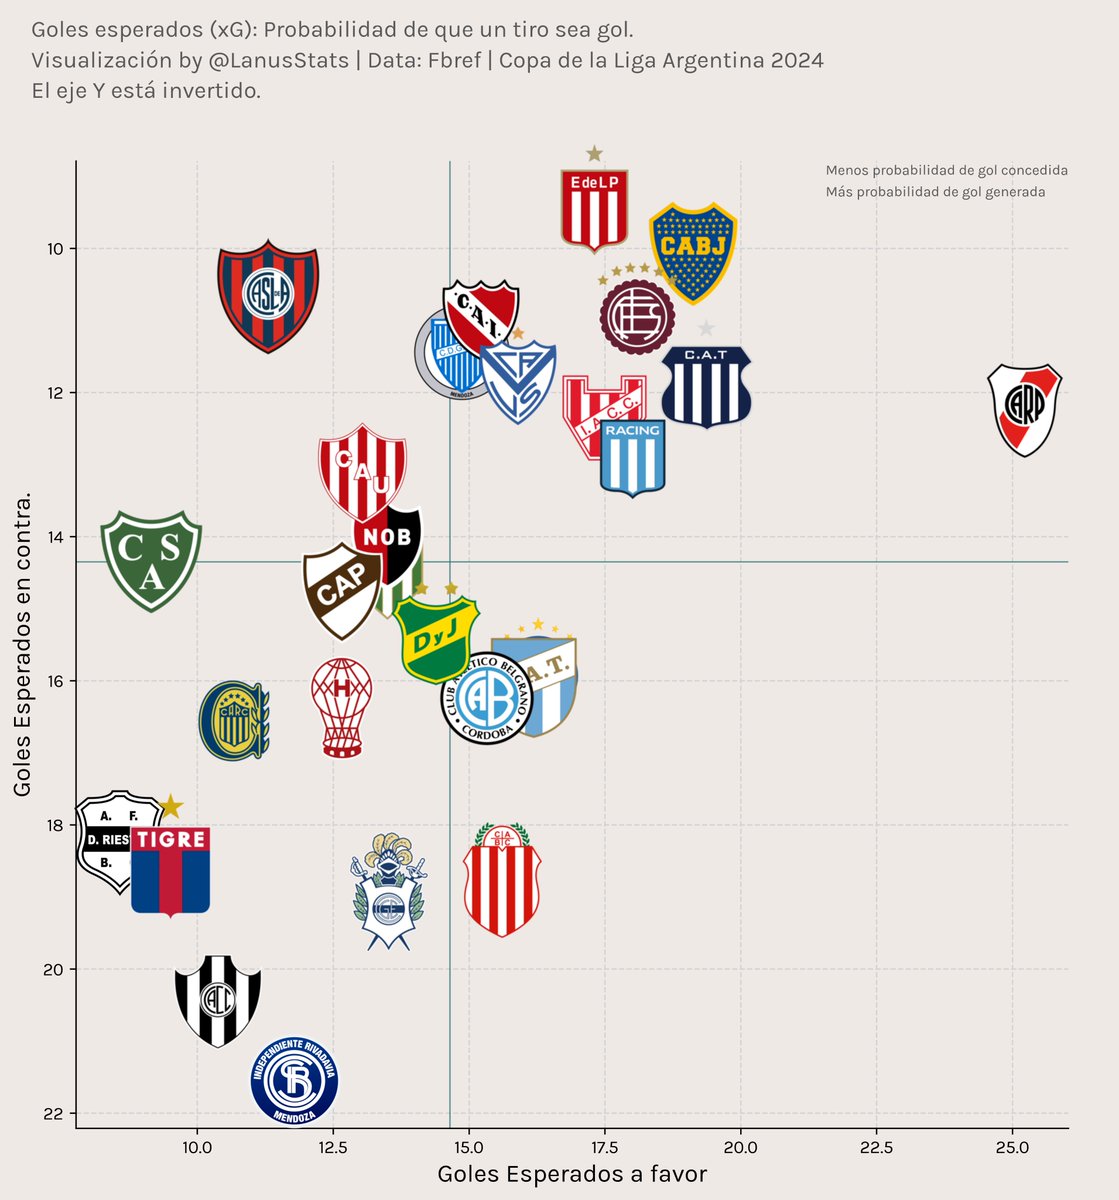 Estadísticas sobre chances generadas y concedidas de los equipos de la #CopaDeLaLiga 2024. El eje vertical está invertido para que en el cuadrante superior derecho queden los equipos con más generado y menos concedido.